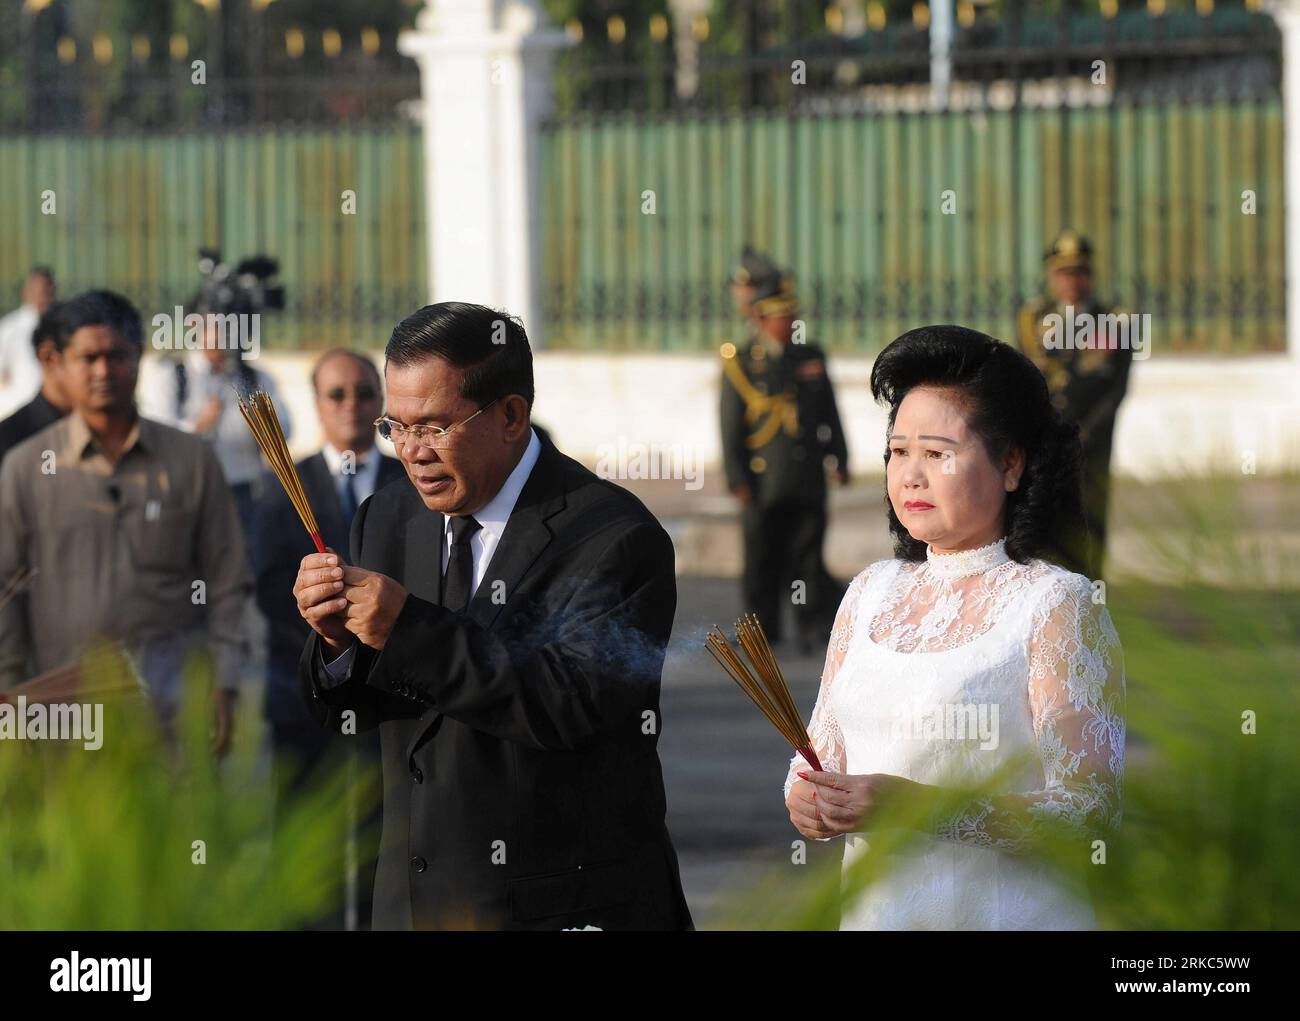 Bildnummer : 54675353 Datum : 25.11.2010 Copyright : imago/Xinhua (101125) -- PHNOM PENH, 25 novembre 2010 (Xinhua) -- le Premier ministre cambodgien Hun Sen (à gauche) et son épouse Bun Rany Hun Sen assistent à la cérémonie de deuil des victimes de la ruée à Phnom Penh le 25 novembre 2010. La cérémonie a eu lieu le 25 novembre pour pleurer les morts dans la ruée qui a eu lieu à Phnom Penh le 22 novembre. (Xinhua/Chen Duo) (axy) CAMBODGE-PHNOM PENH-STAMPEDE-DEUIL CEMORATION PUBLICATIONxNOTxINxCHN People Politik Gesellschaft Katastrophe Brücke Massenpanik Wasserfest Trauer Trauerfeier Gedenken k Banque D'Images